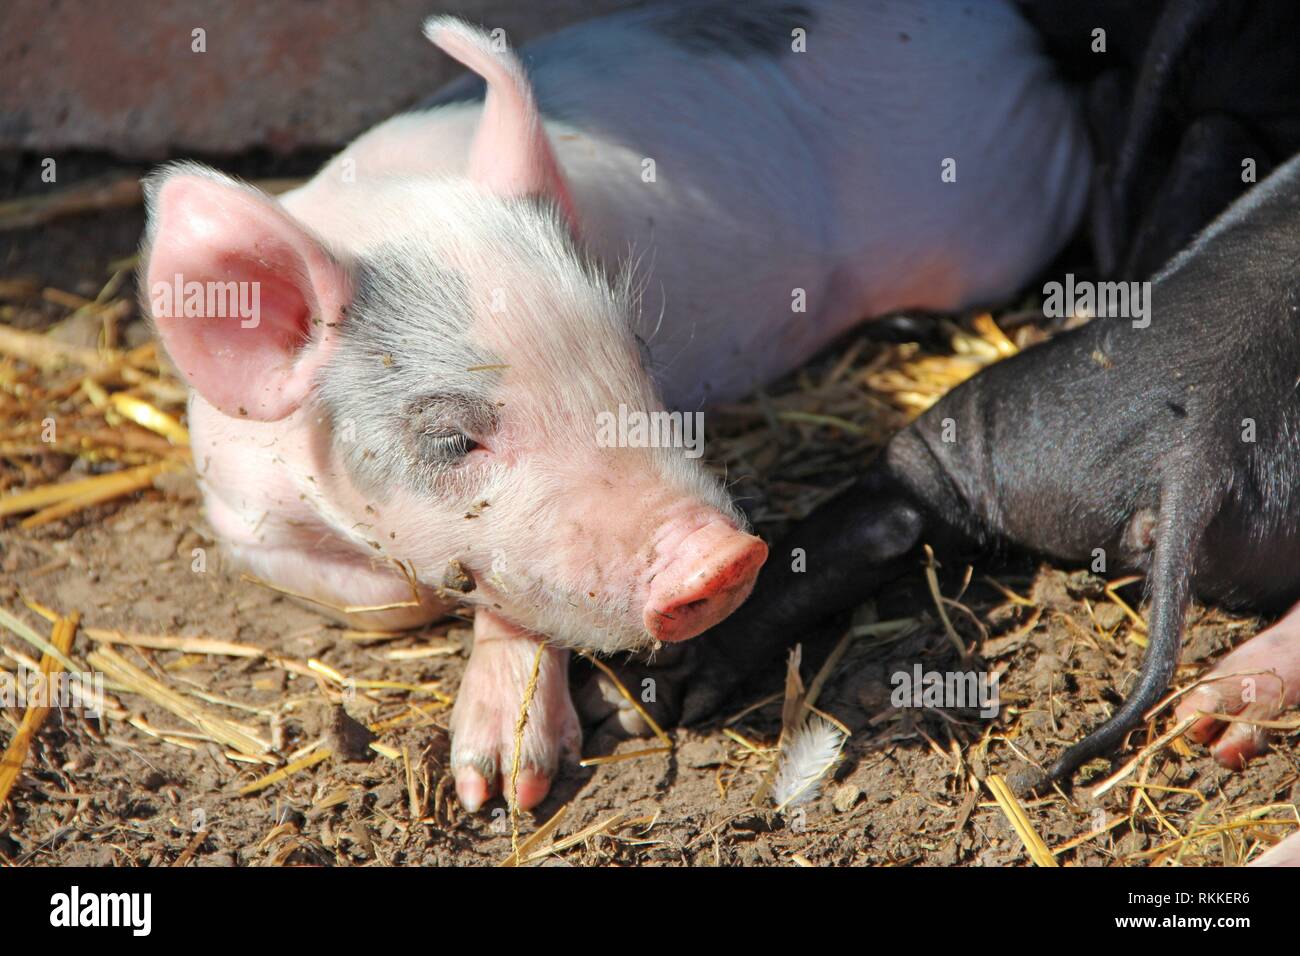 Schweine Spielen Und Schlafen Auf Hof Der Farm Rosa Ferkel Aalen Sich In Der Sonne Und Schlafen Lustige Schweine Junge Baby Ferkel Spielen Im Hof Stockfotografie Alamy